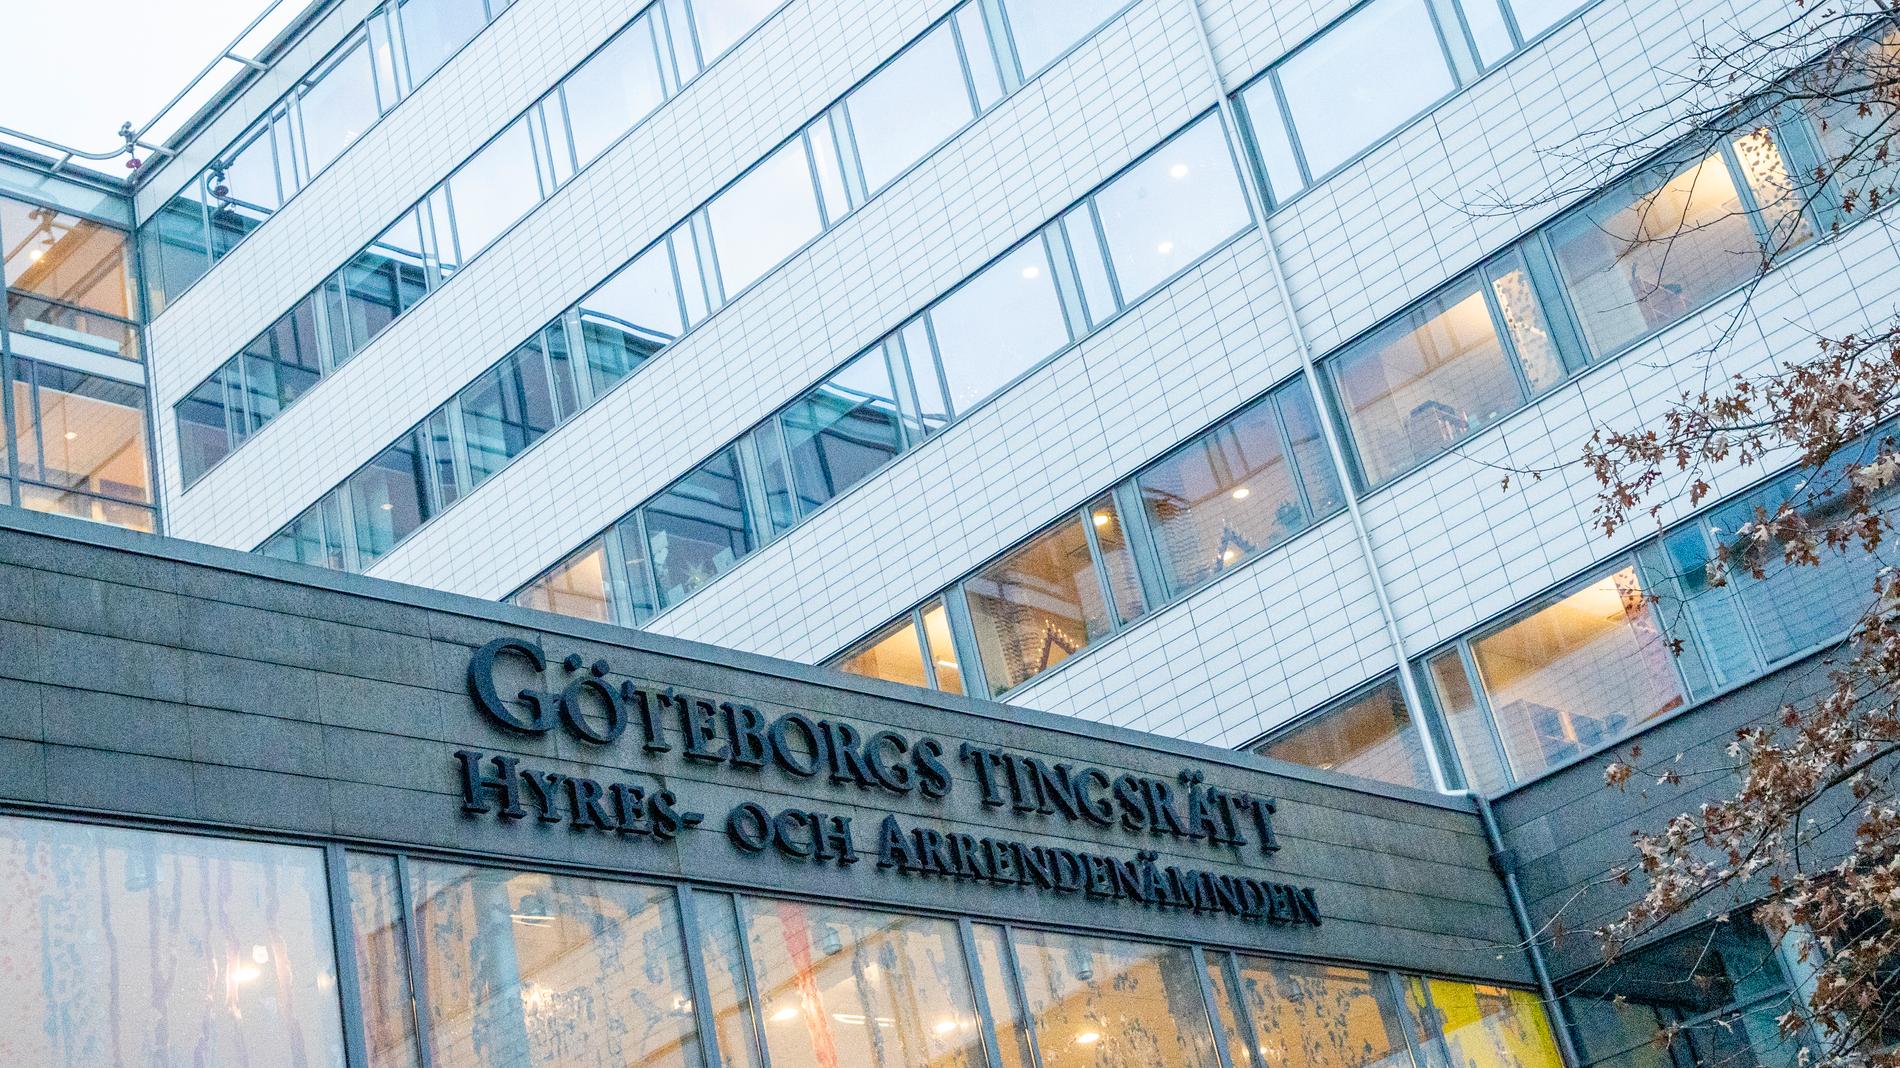 Två män i 20-årsåldern åtalas vid Göteborgs tingsrätt för att ha utsatt en kvinna för grov våldtäkt på hennes skönhetssalong. Arkivbild.